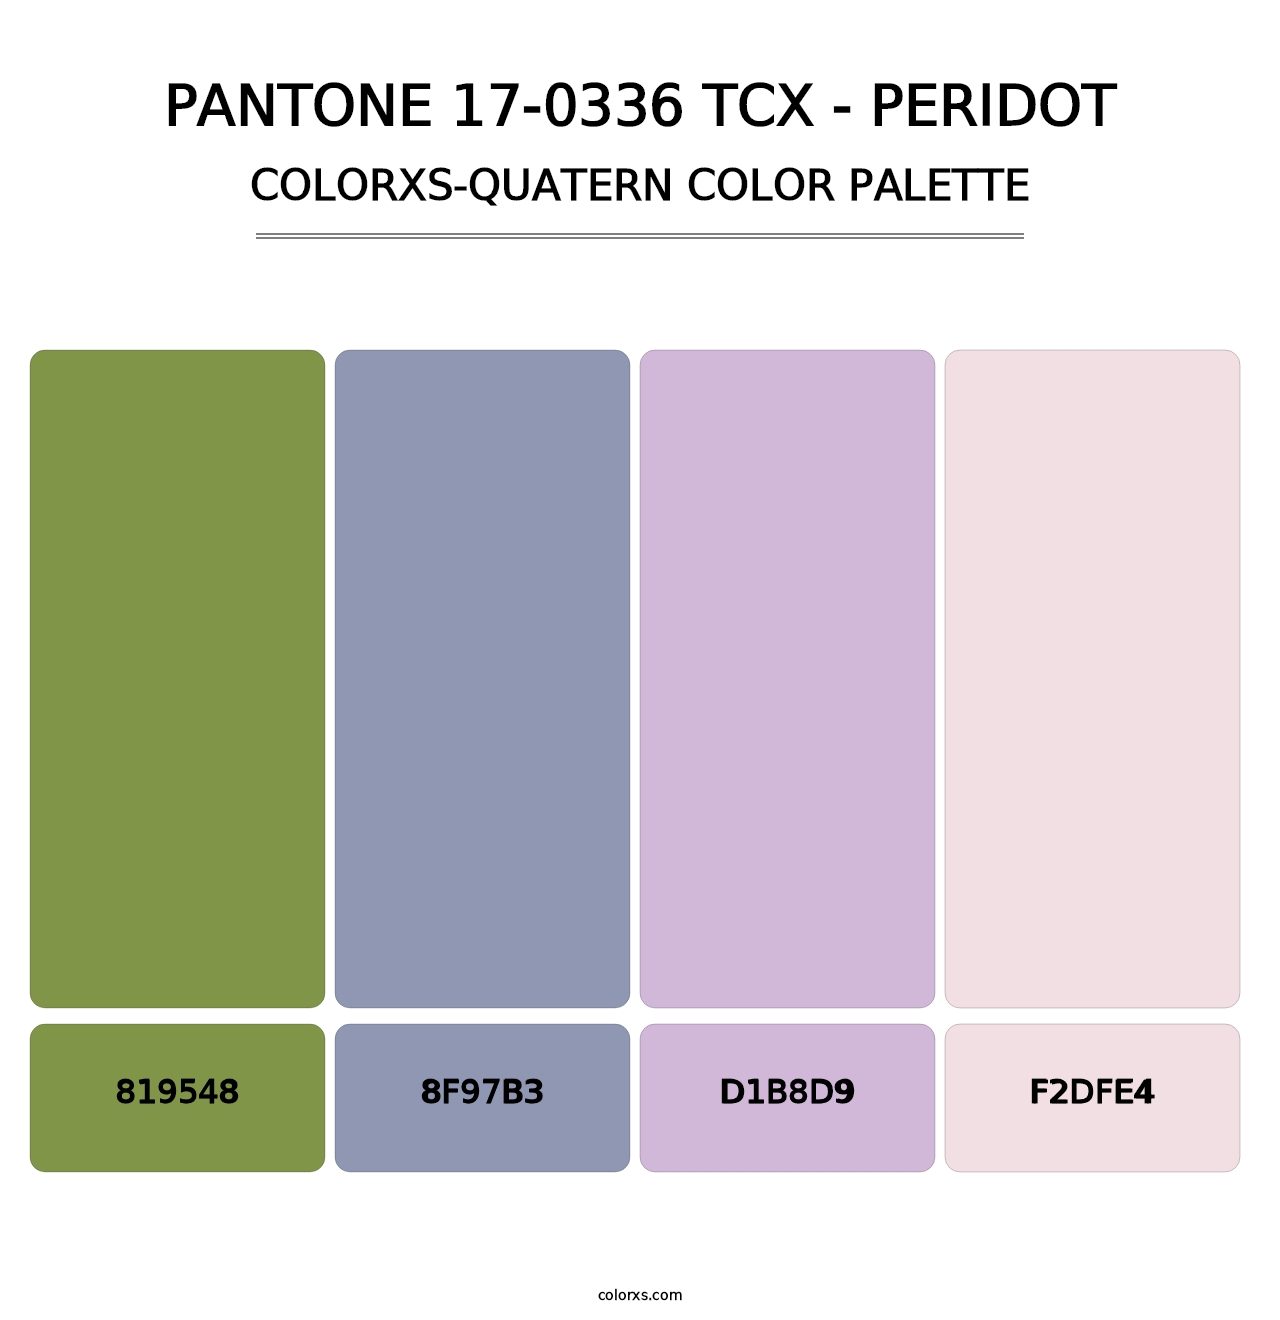 PANTONE 17-0336 TCX - Peridot - Colorxs Quatern Palette